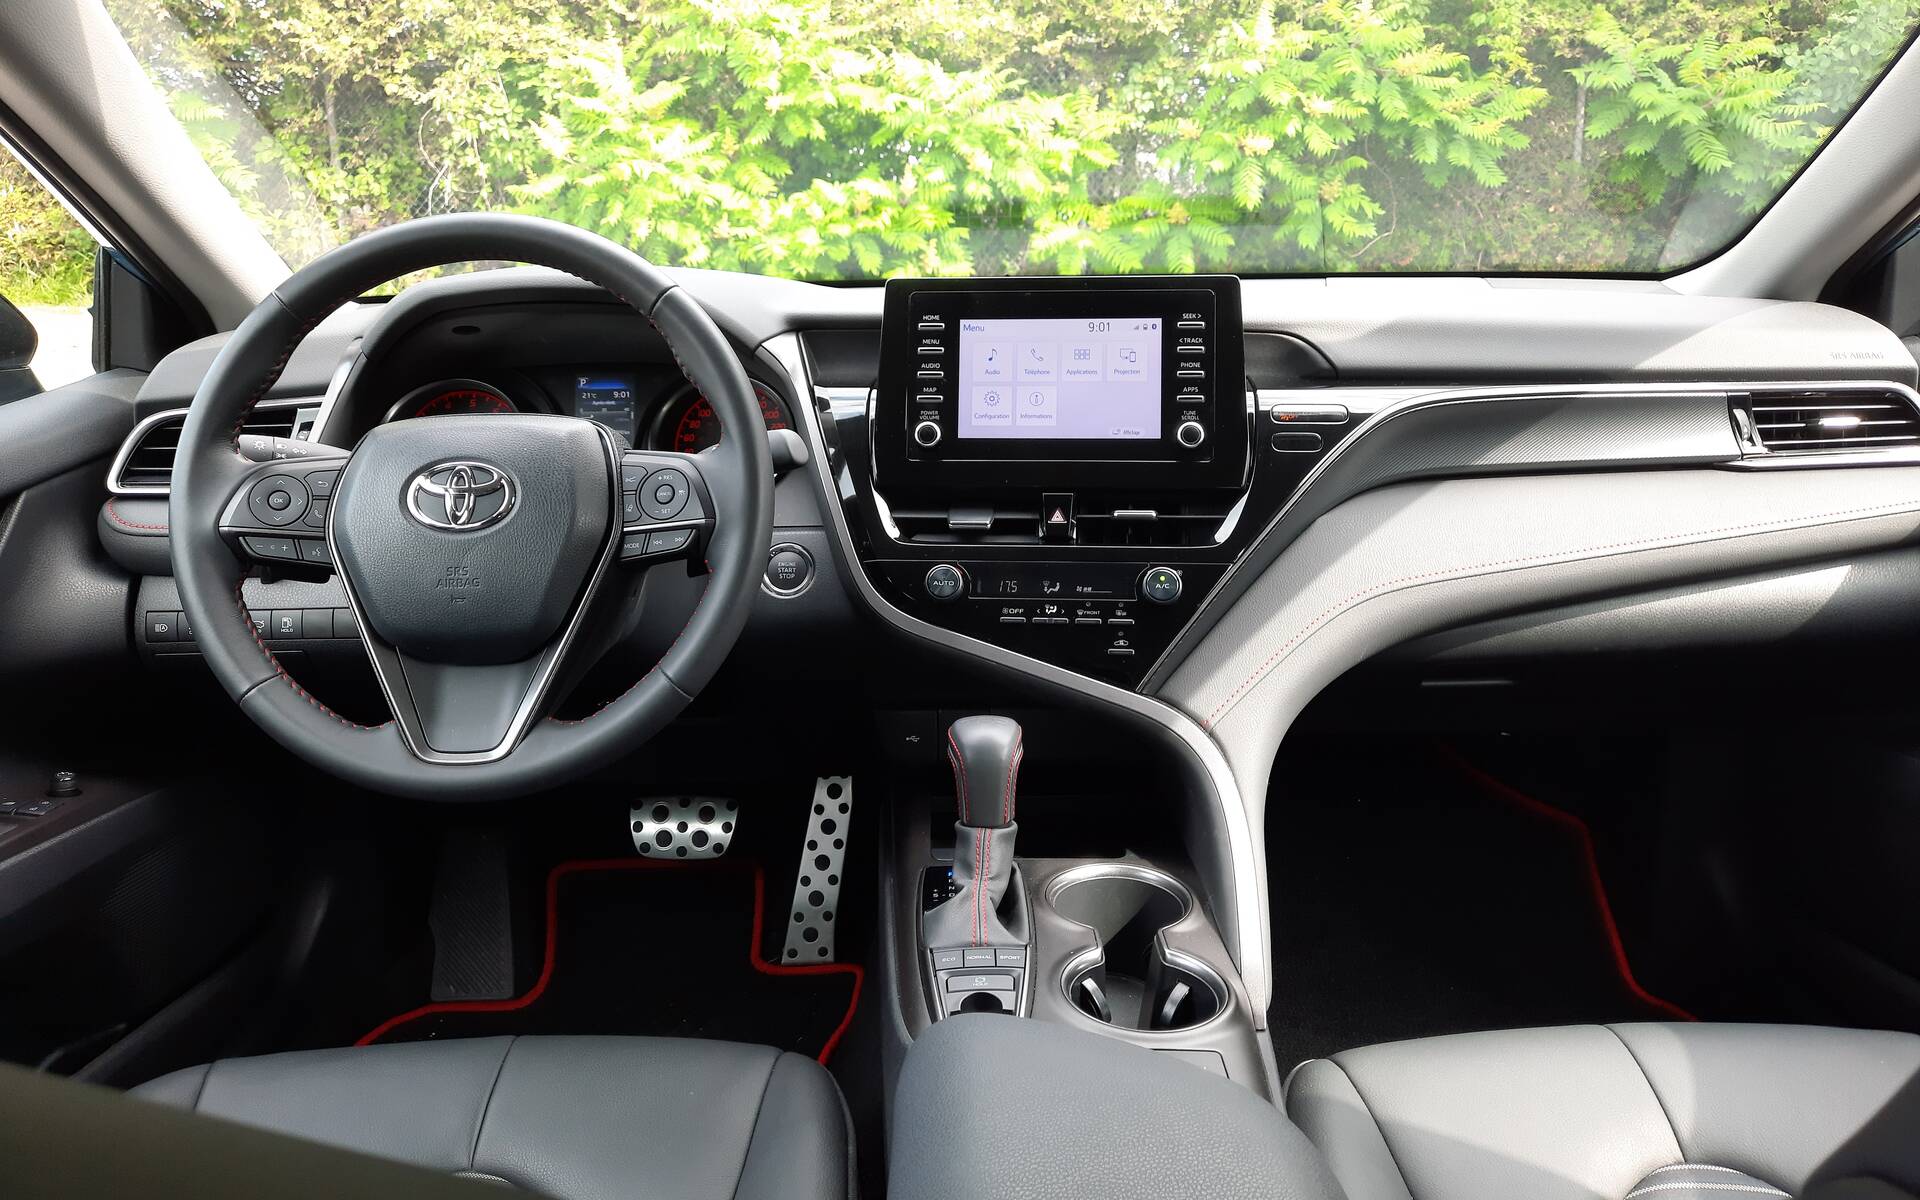 Toyota Camry TRD 2022 : quand la Camry se prend pour une sportive ! 531920-toyota-camry-trd-2022-la-plus-sportive-mais-des-compromis-agacants